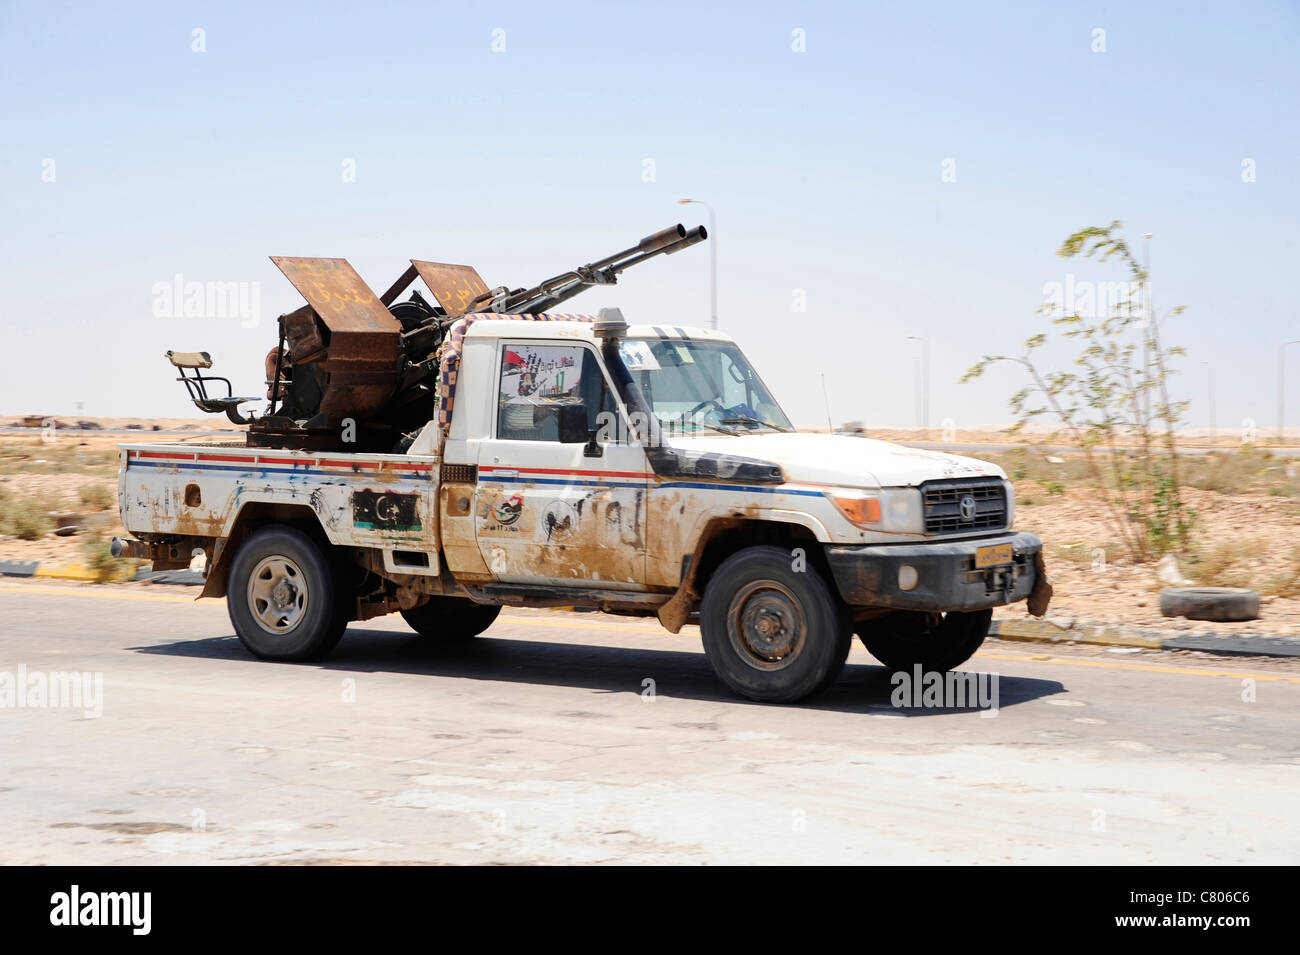 Gratuitamente un esercito libico pickup truck con un ZPU-1 anti-aerei pistola, Ajdabiya, Libia. Foto Stock